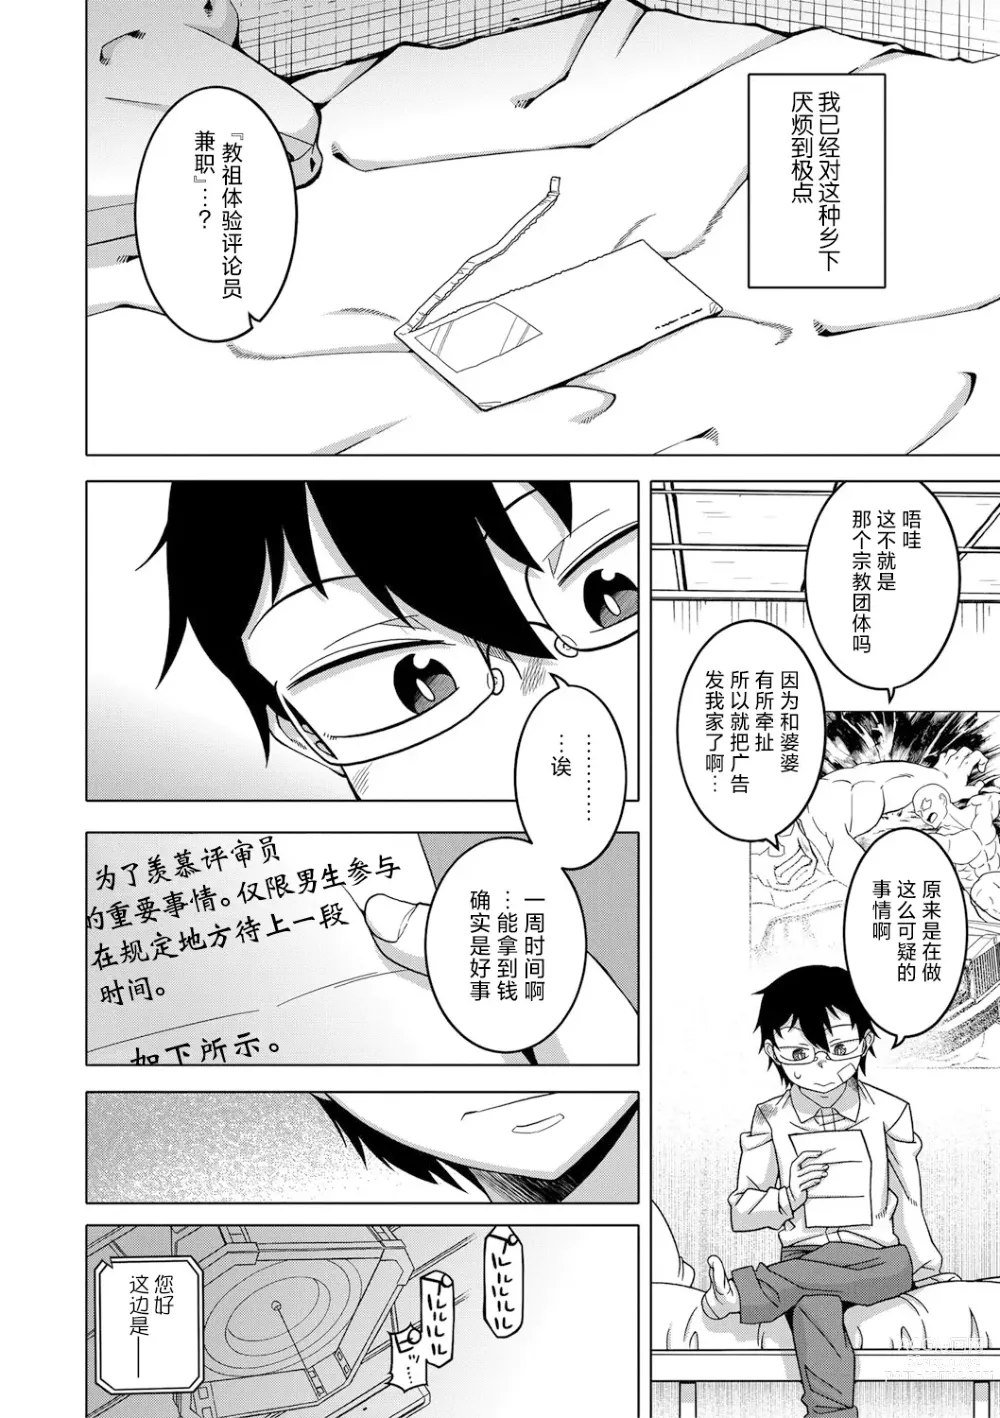 Page 5 of manga Kami-sama no Tsukurikata Ch. 1-5